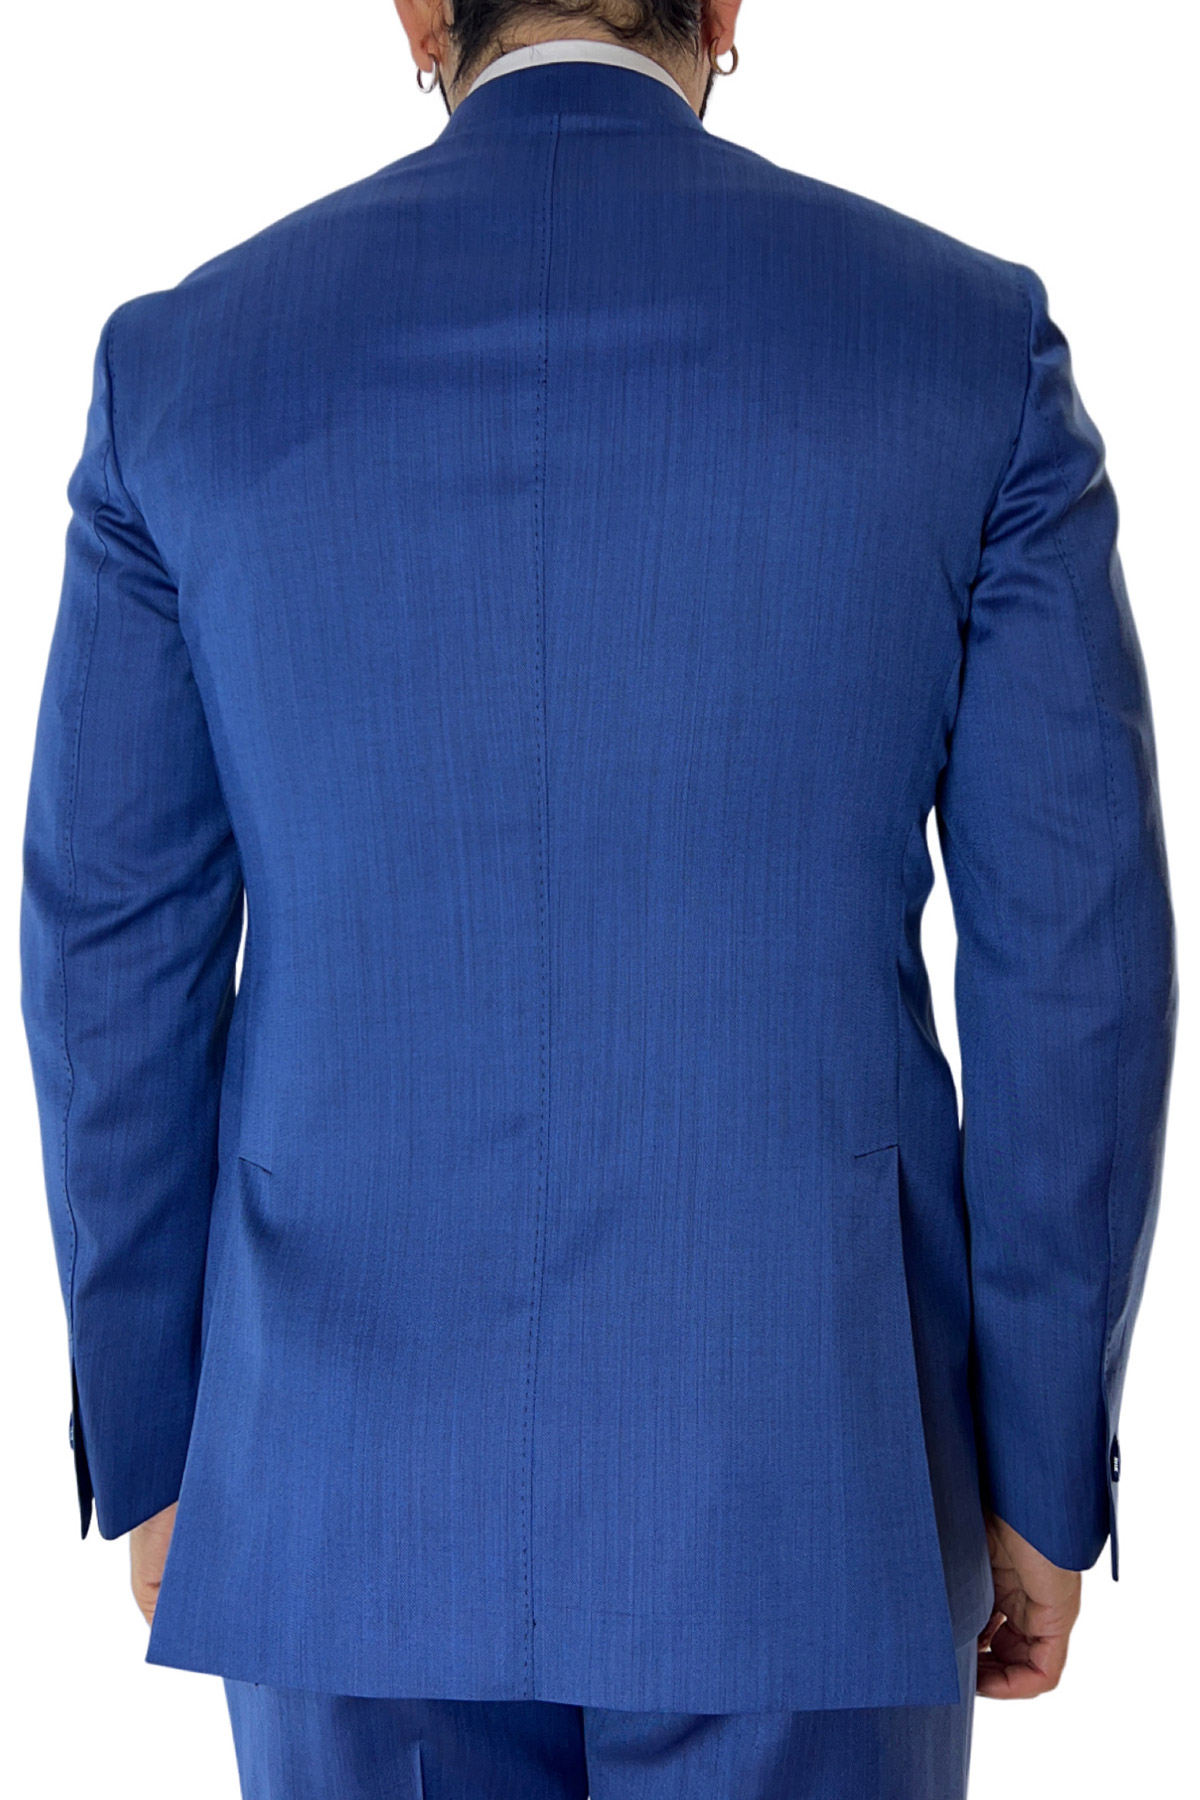 Abito uomo azzurro solaro con giacca monopetto e pantalone vita alta doppia pinces fresco lana Vitale Barberis Canonico